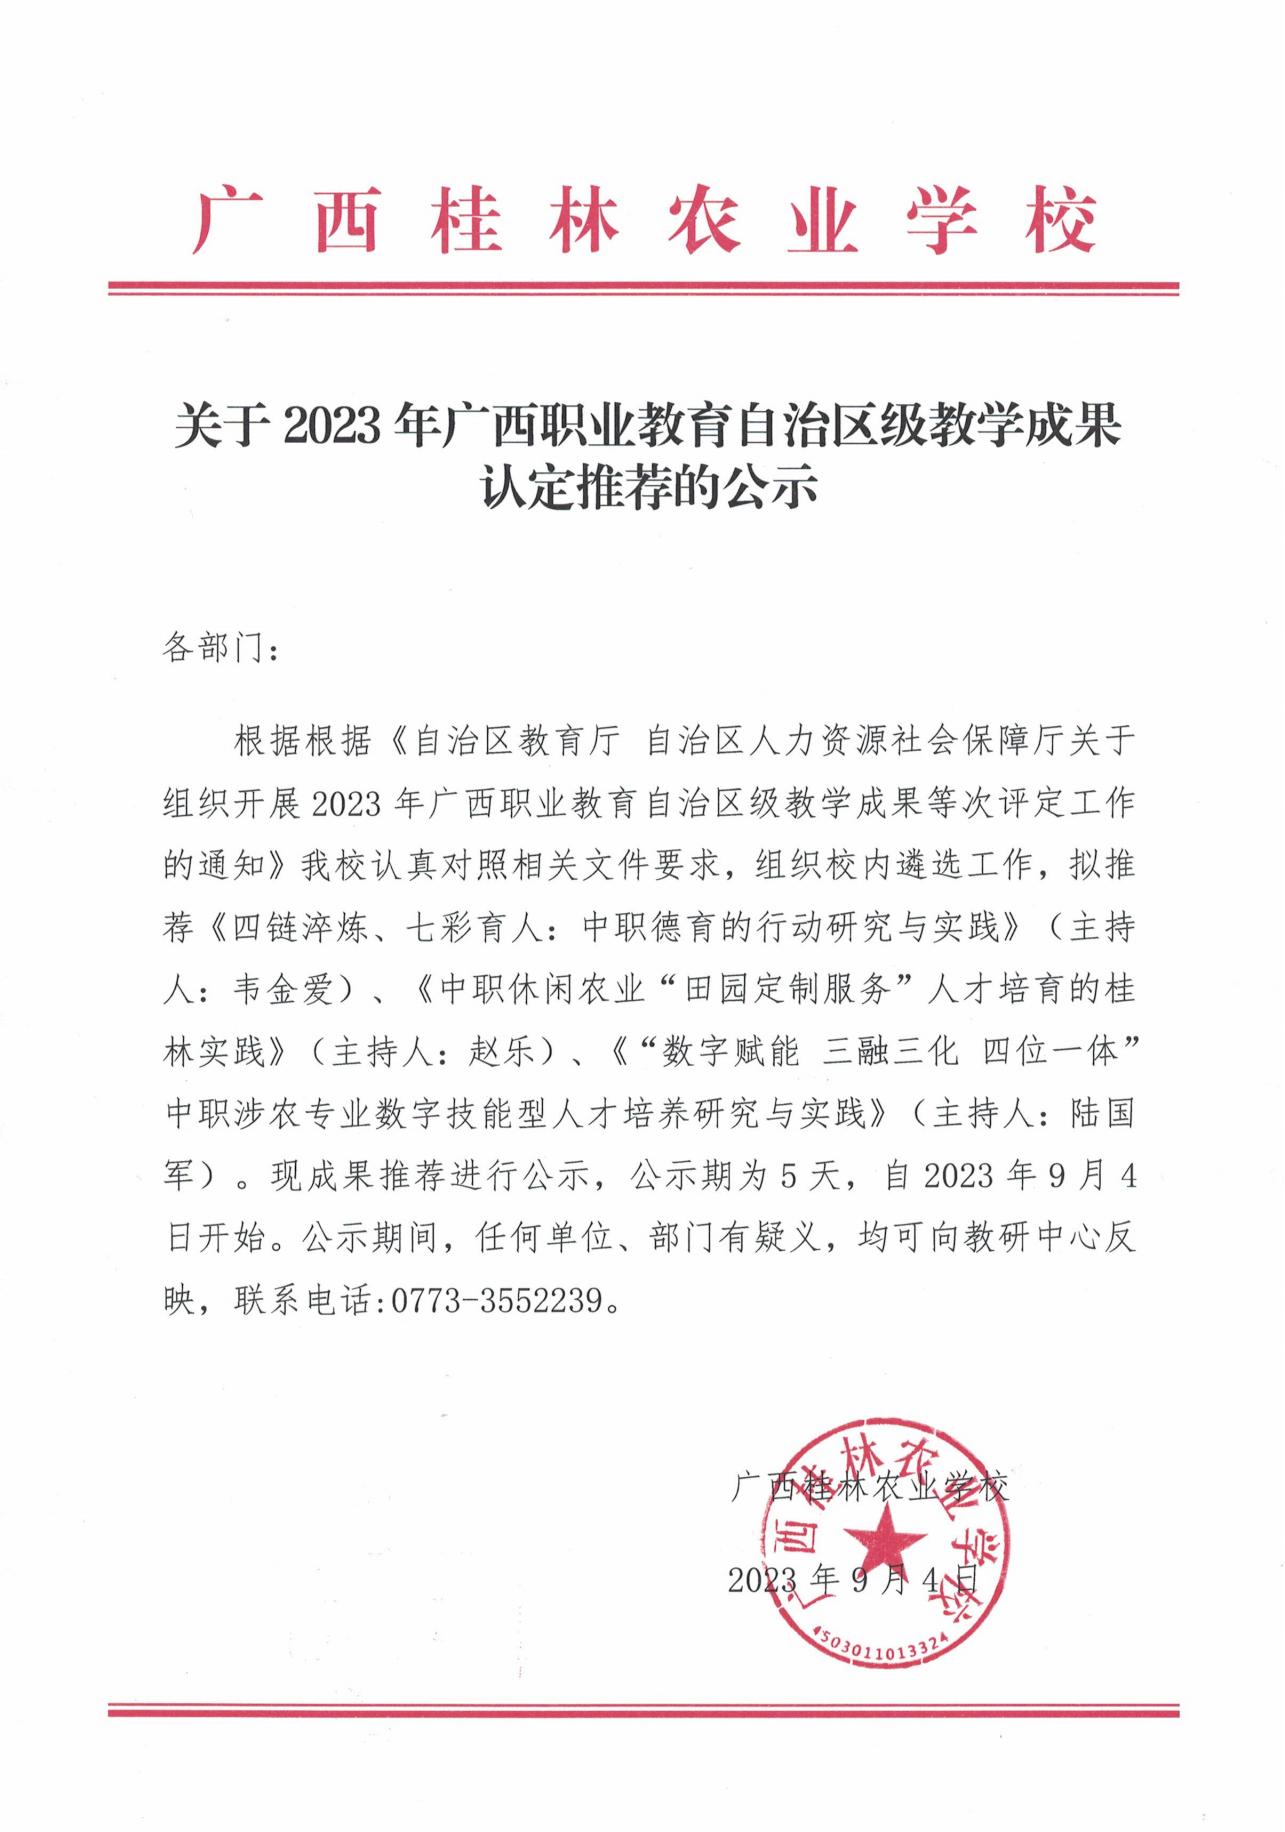 关于2023年广西职业教育自治区级教学成果认定推荐的公示_00.jpg